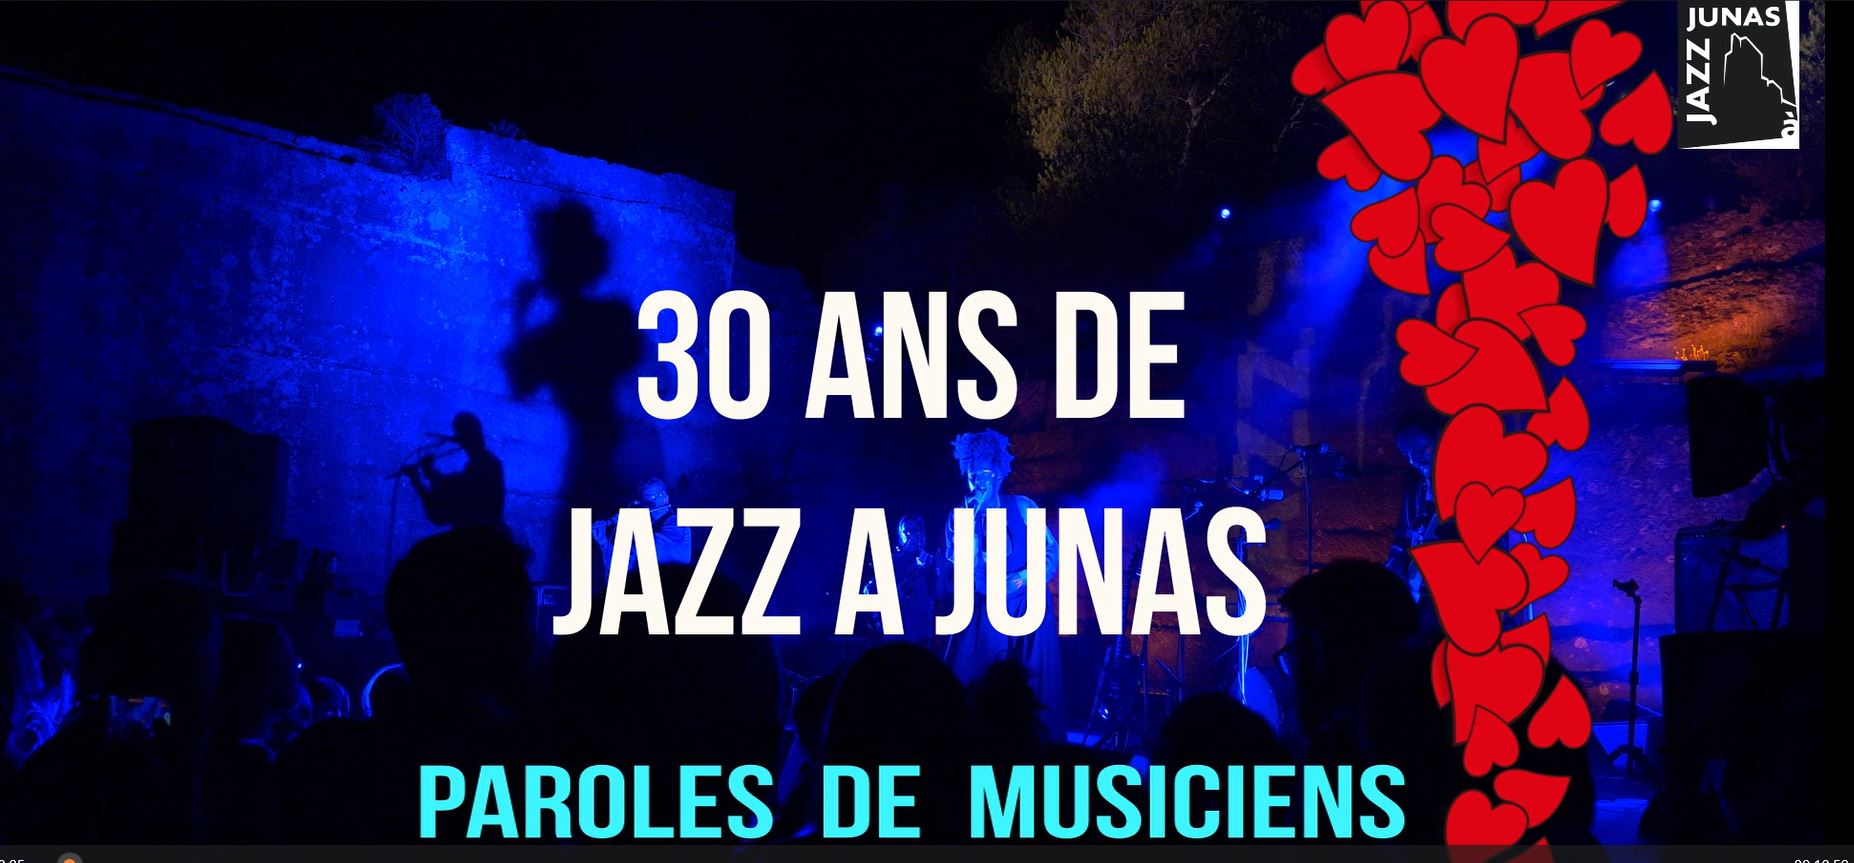 30 ans de Jazz à Junas, Paroles de musiciens